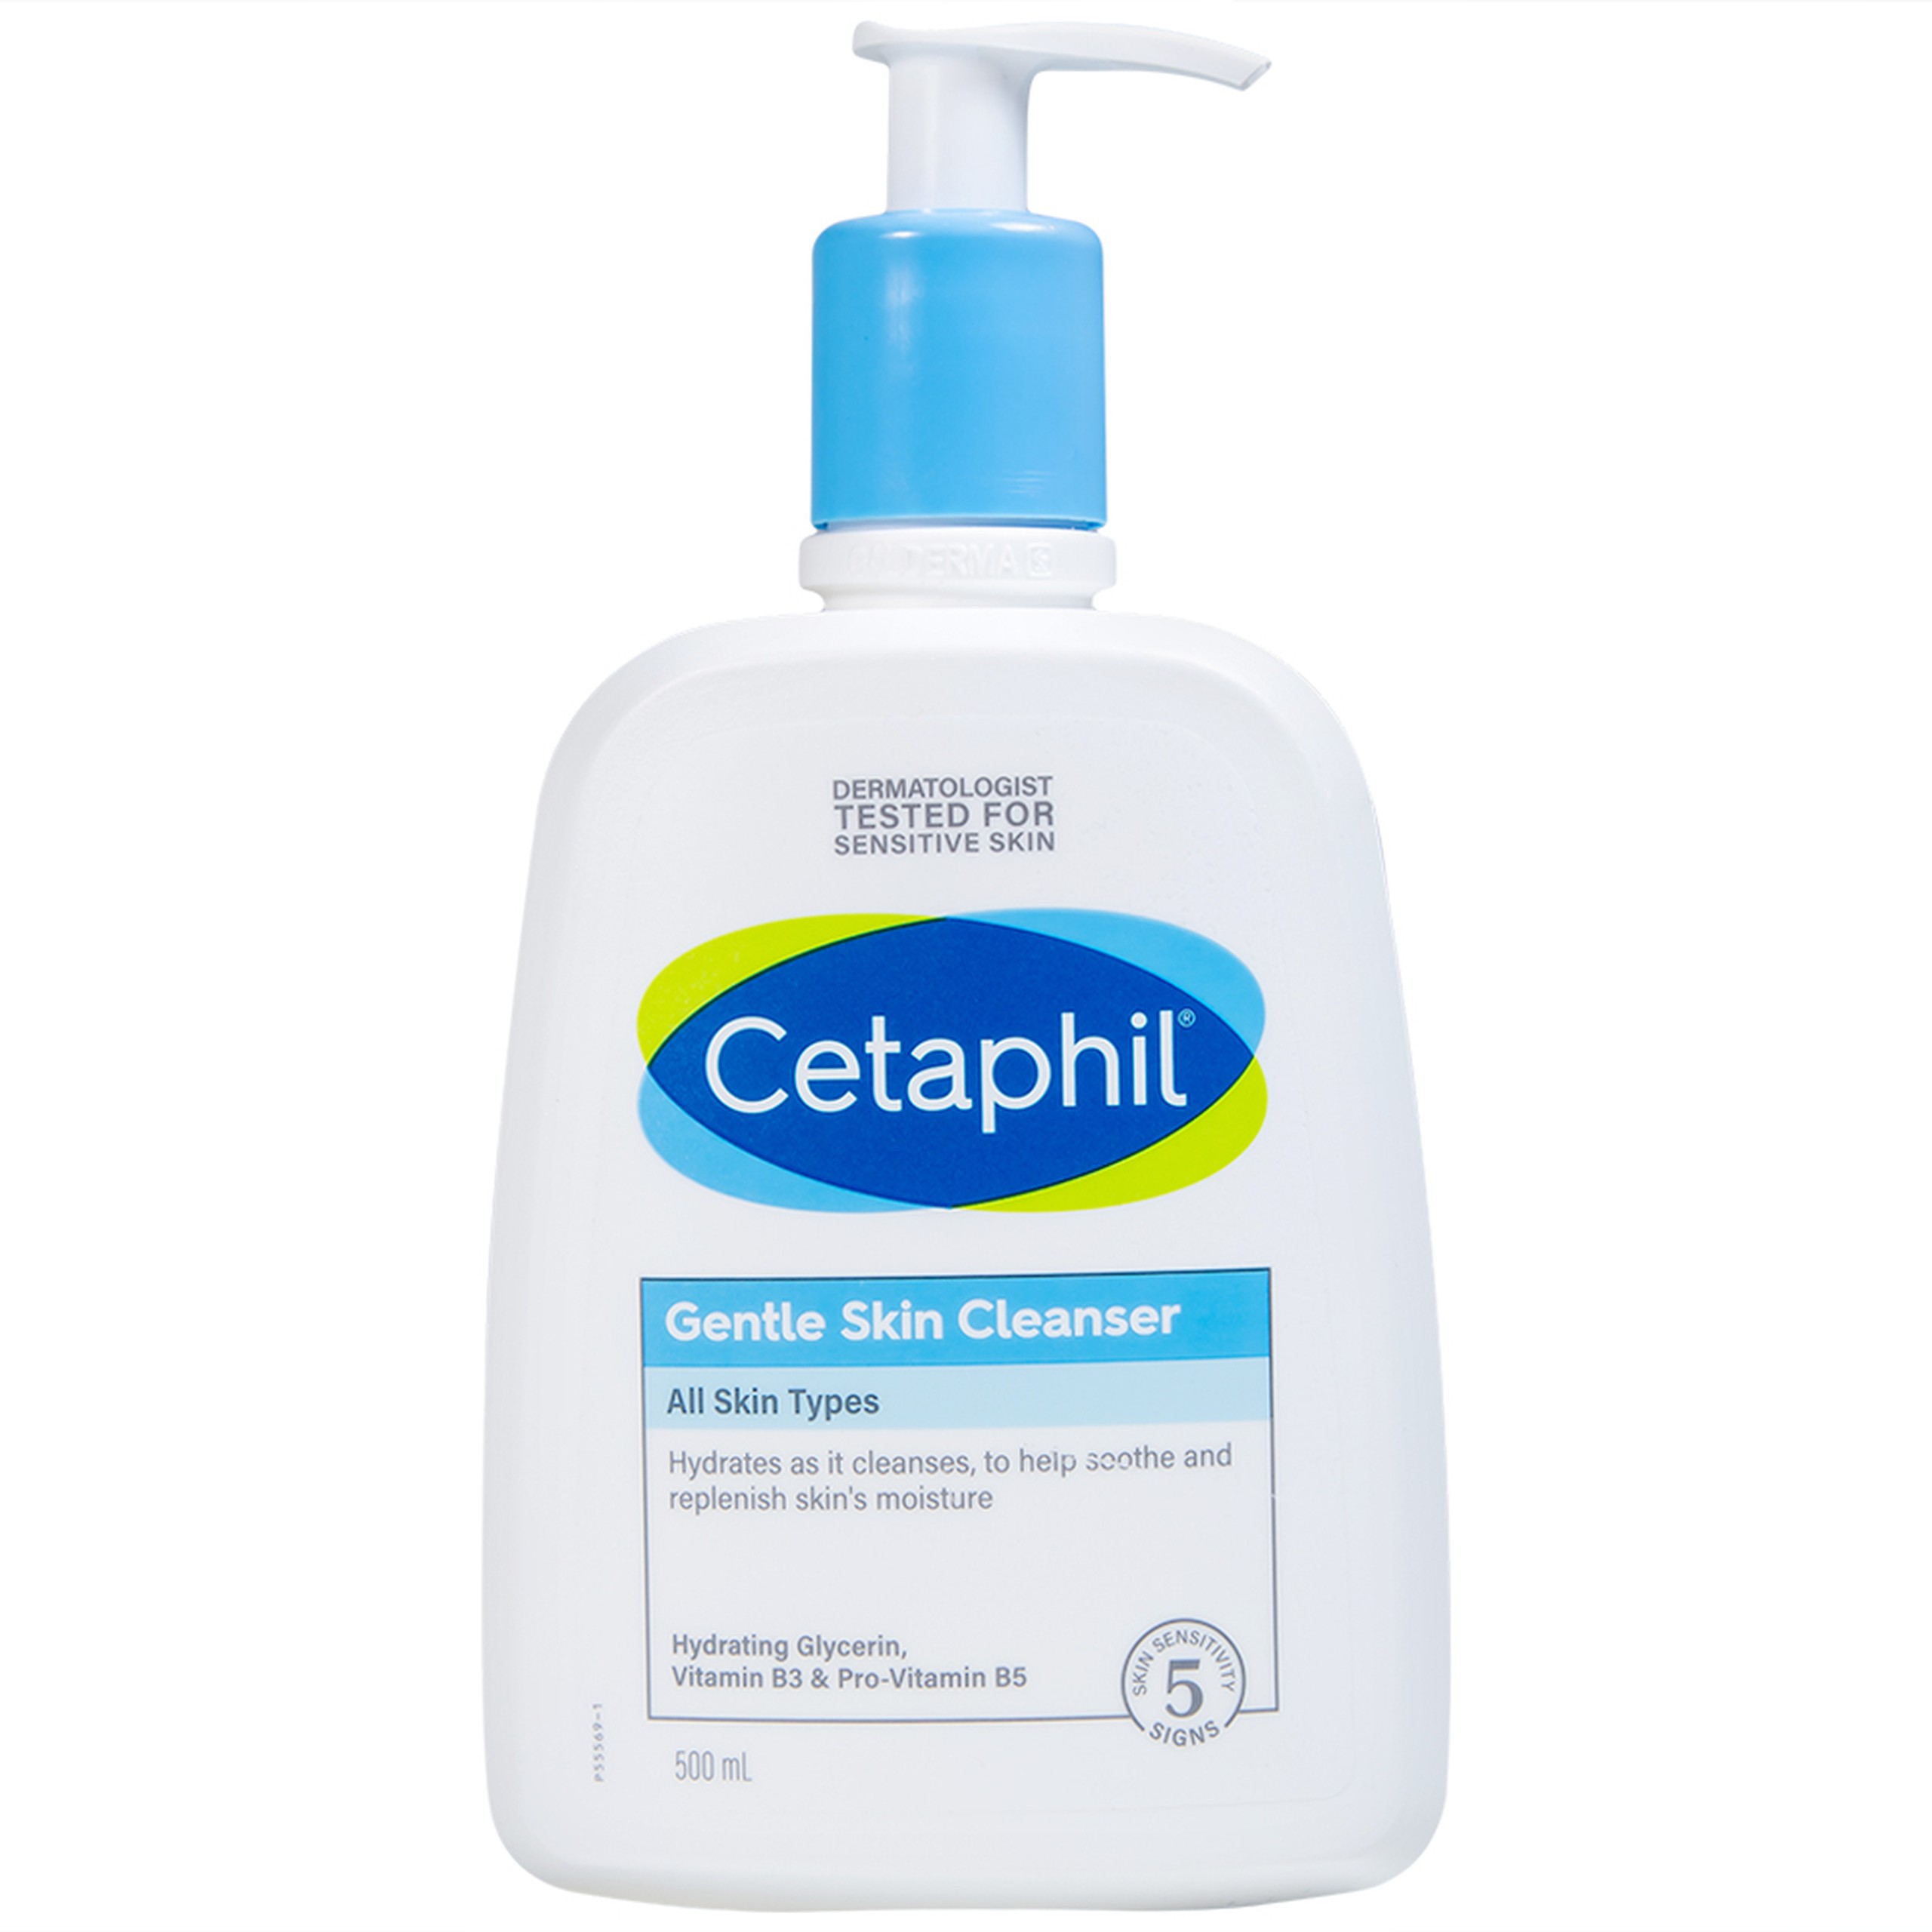 Sữa rửa mặt dịu nhẹ Cetaphil Gentle Skin Cleanser cung cấp độ ẩm cho da (500ml)